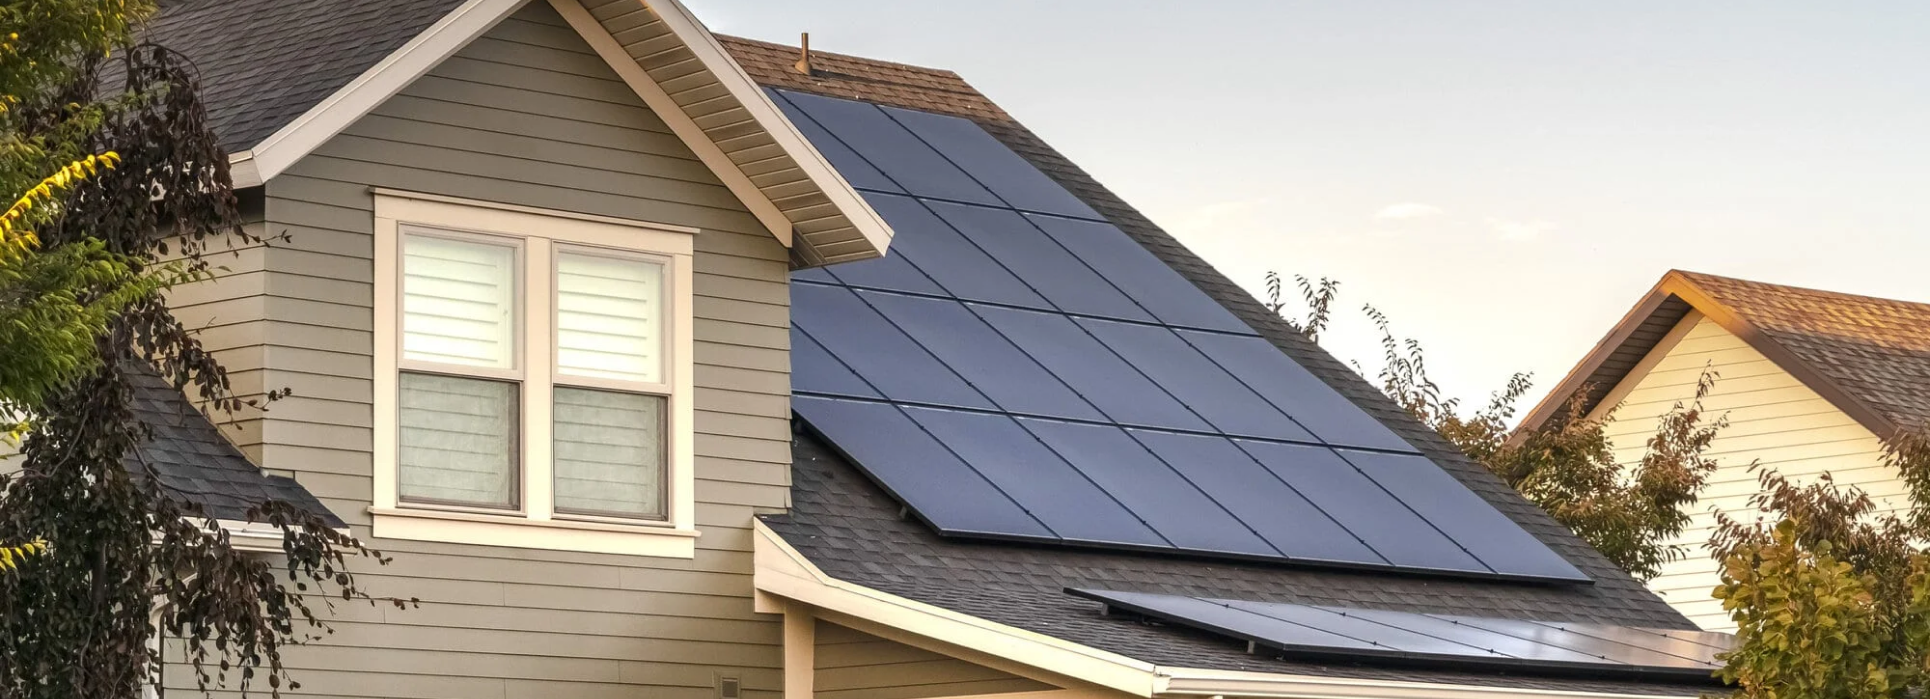 Pianificazione di un sistema di energia solare per la casa per risparmiare energia